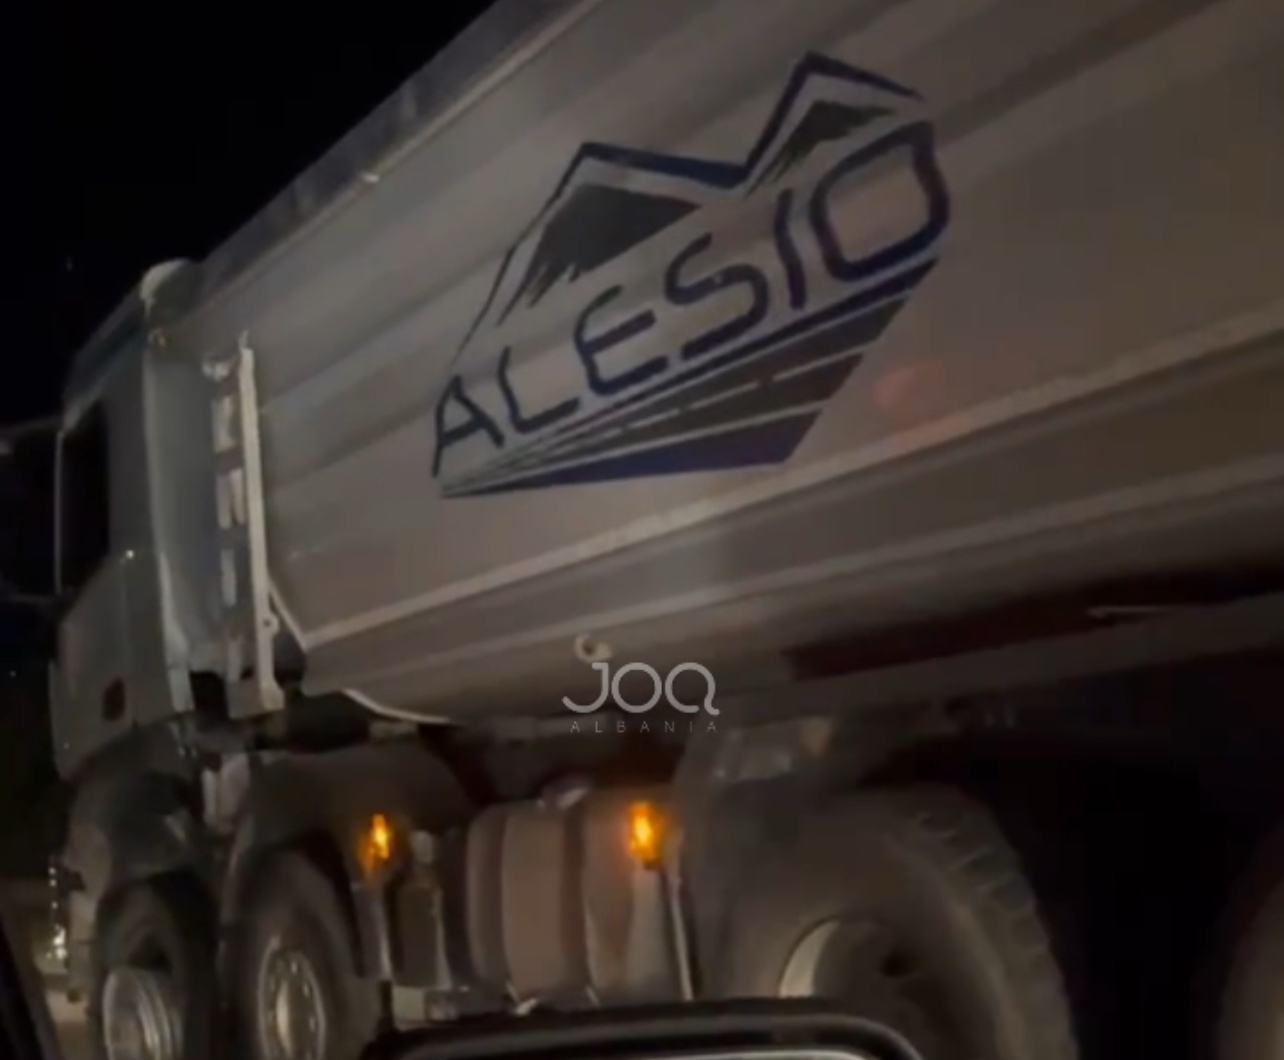 Kthehet përmbys makina në autostradën Tiranë-Durrës, kamionit të Alesios i shpërthejnë gomat